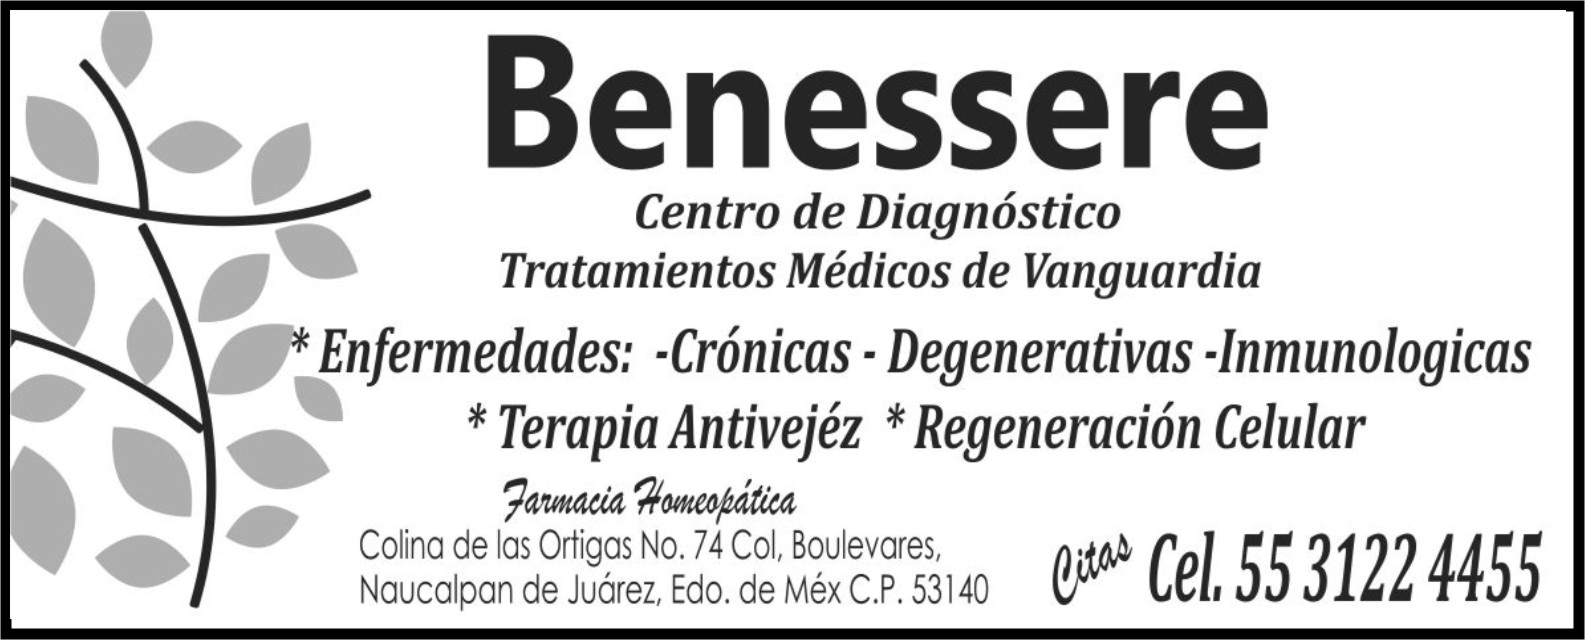 BENESSERE

CENTRO DE DIAGNOSTICO

TRATAMIENTOS